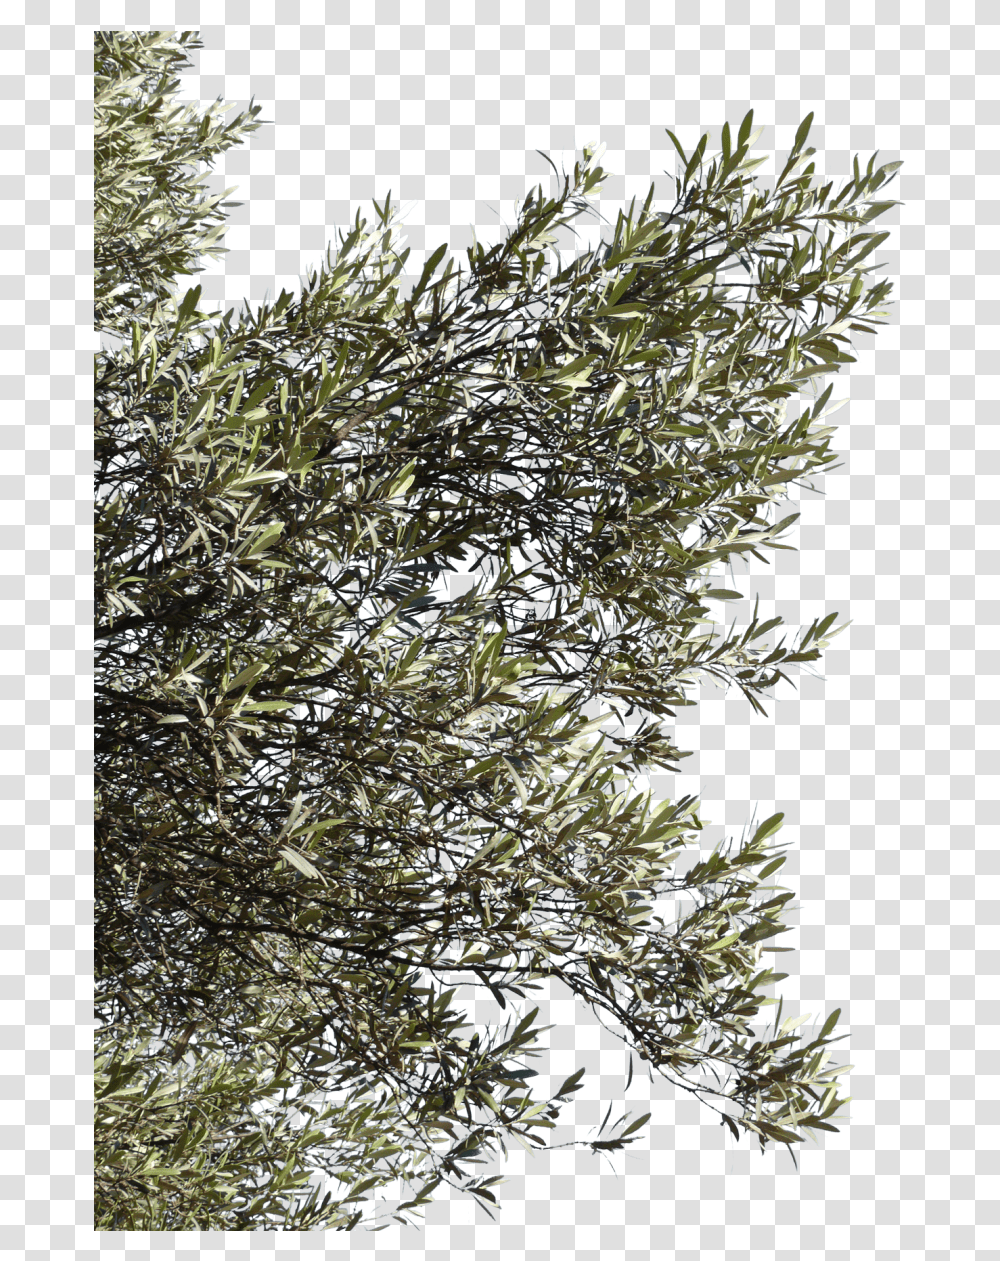 Kbytes V75 Olives Background Olive Tree, Bush, Vegetation, Plant, Nature Transparent Png